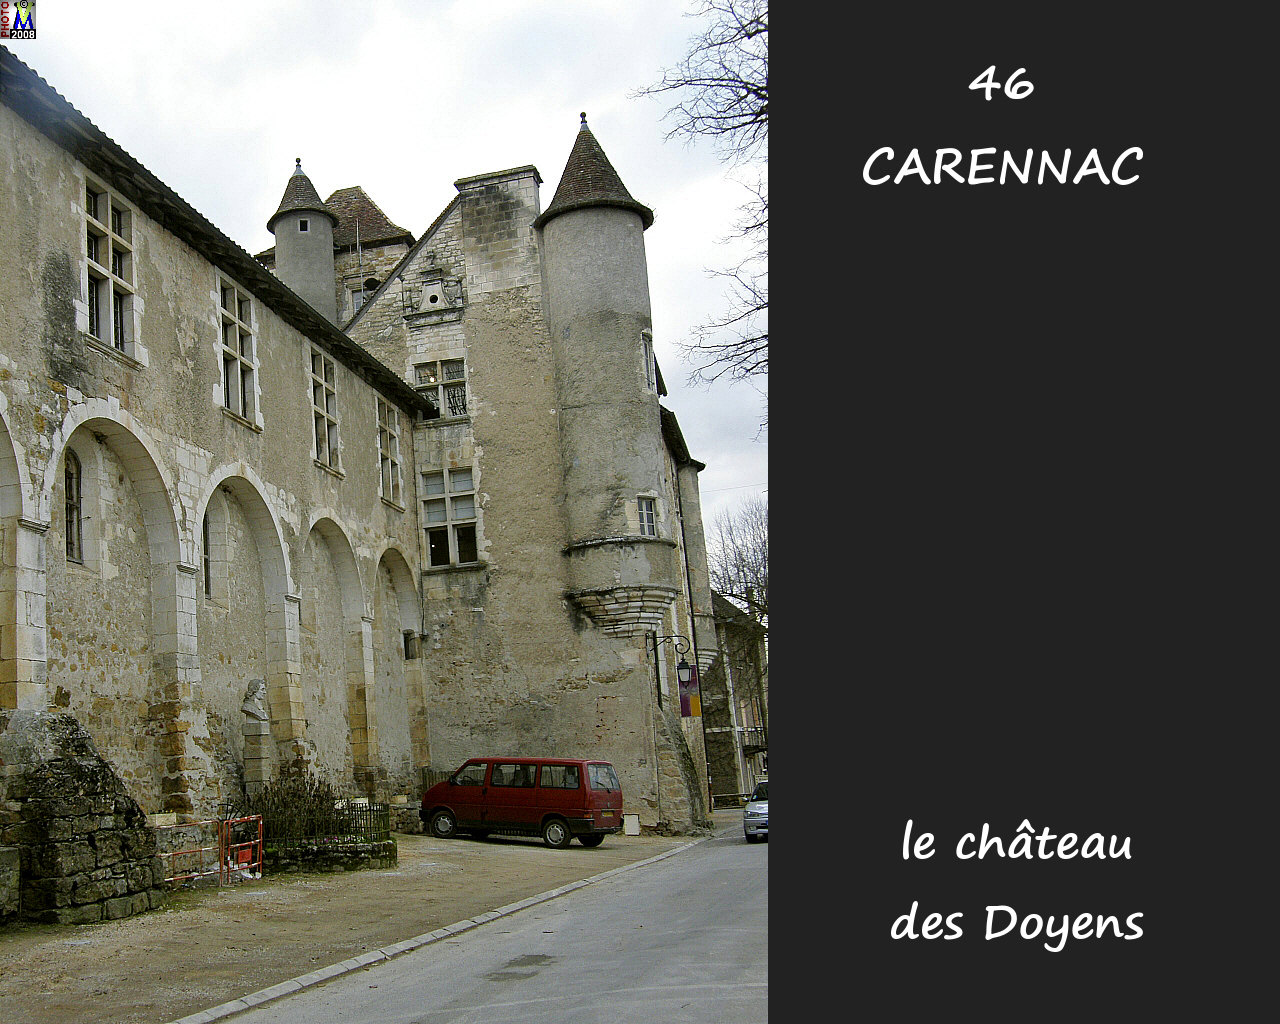 46CARENNAC_chateau_102.jpg